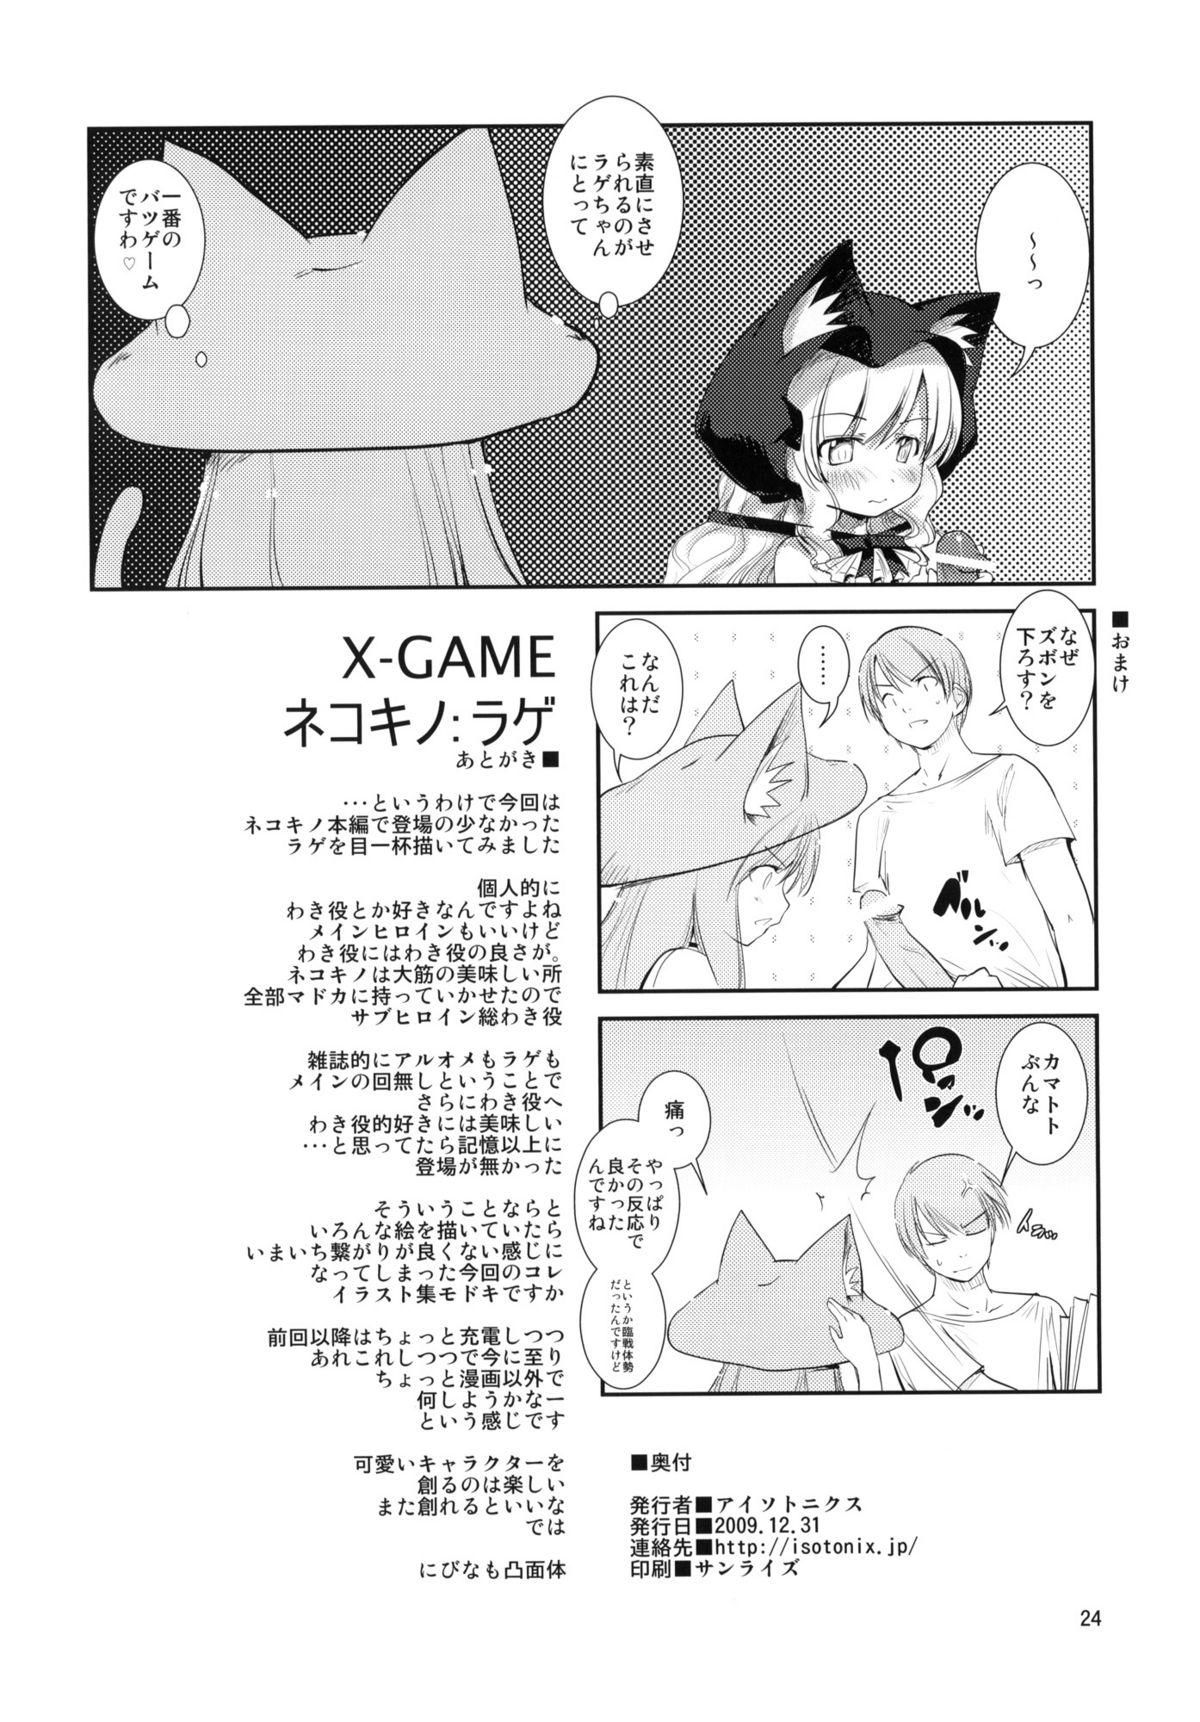 X-GAME Nekokino: Rage 20